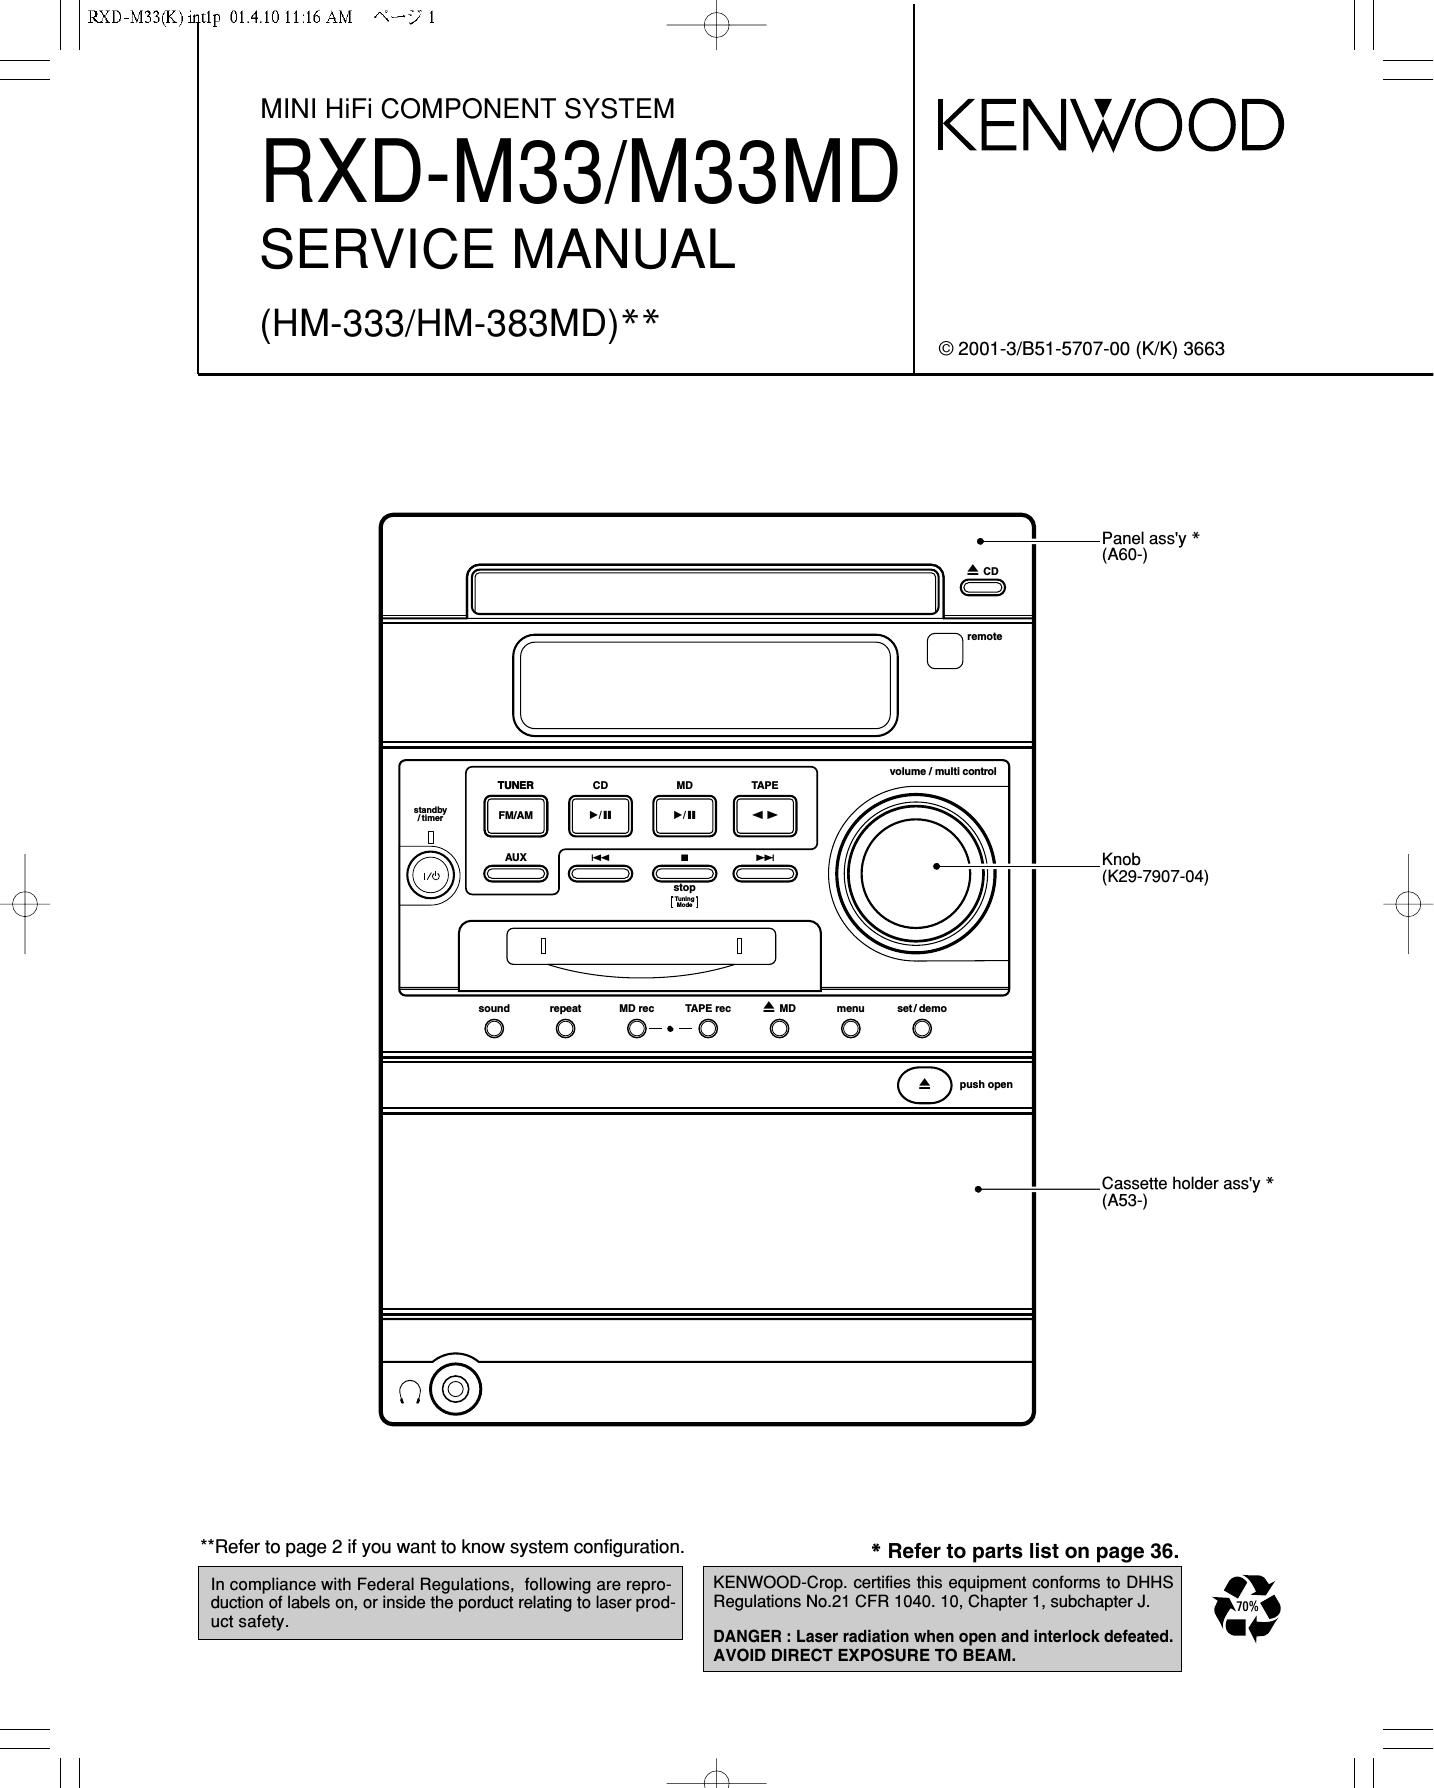 Kenwood HM 333 Service Manual